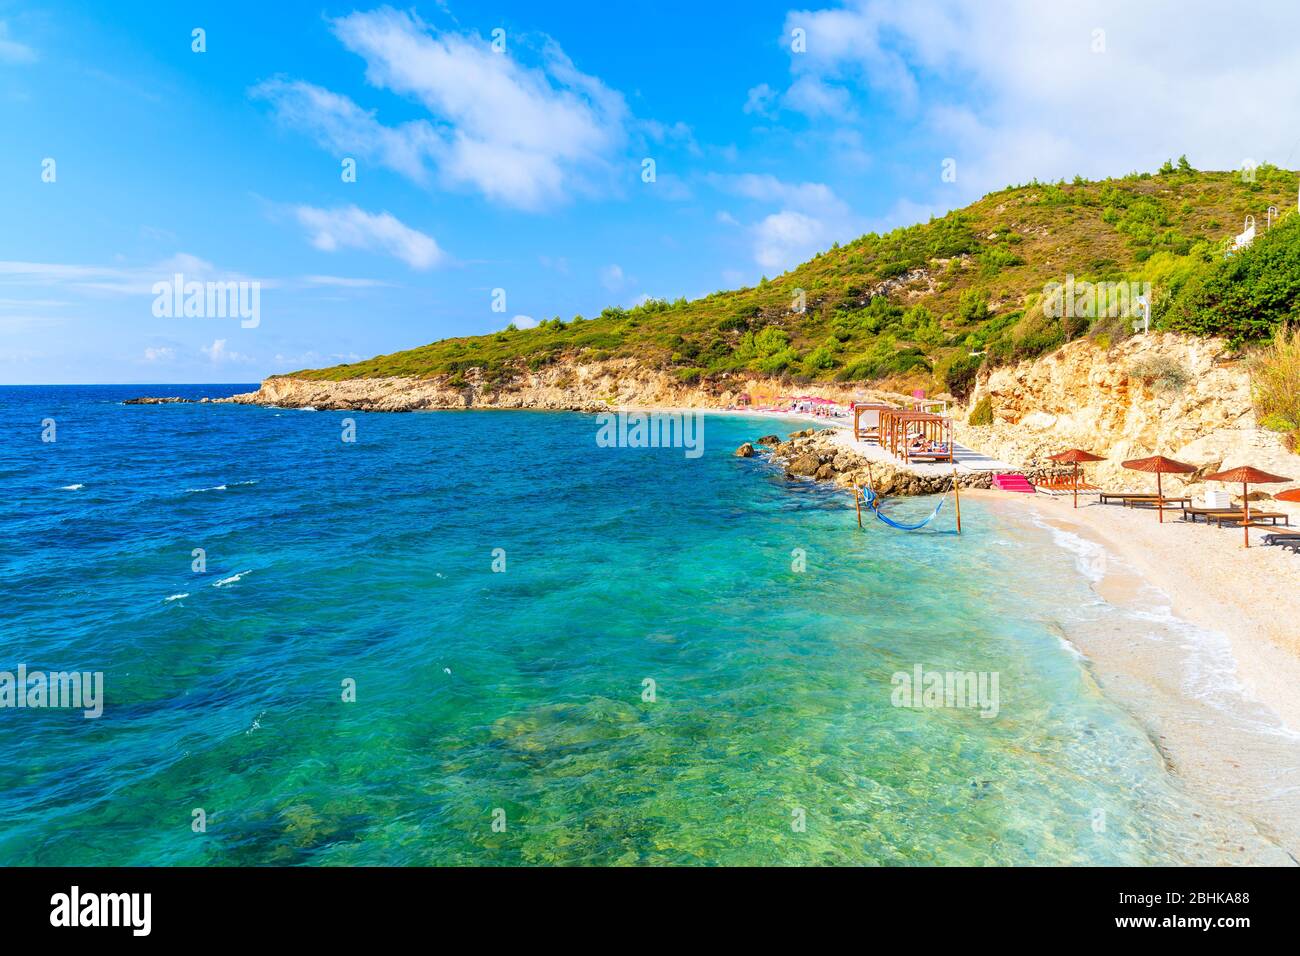 Idílica playa en la bahía de Proteas cerca de la ciudad de Pythagorion, isla de Samos, Mar Egeo, Grecia Foto de stock